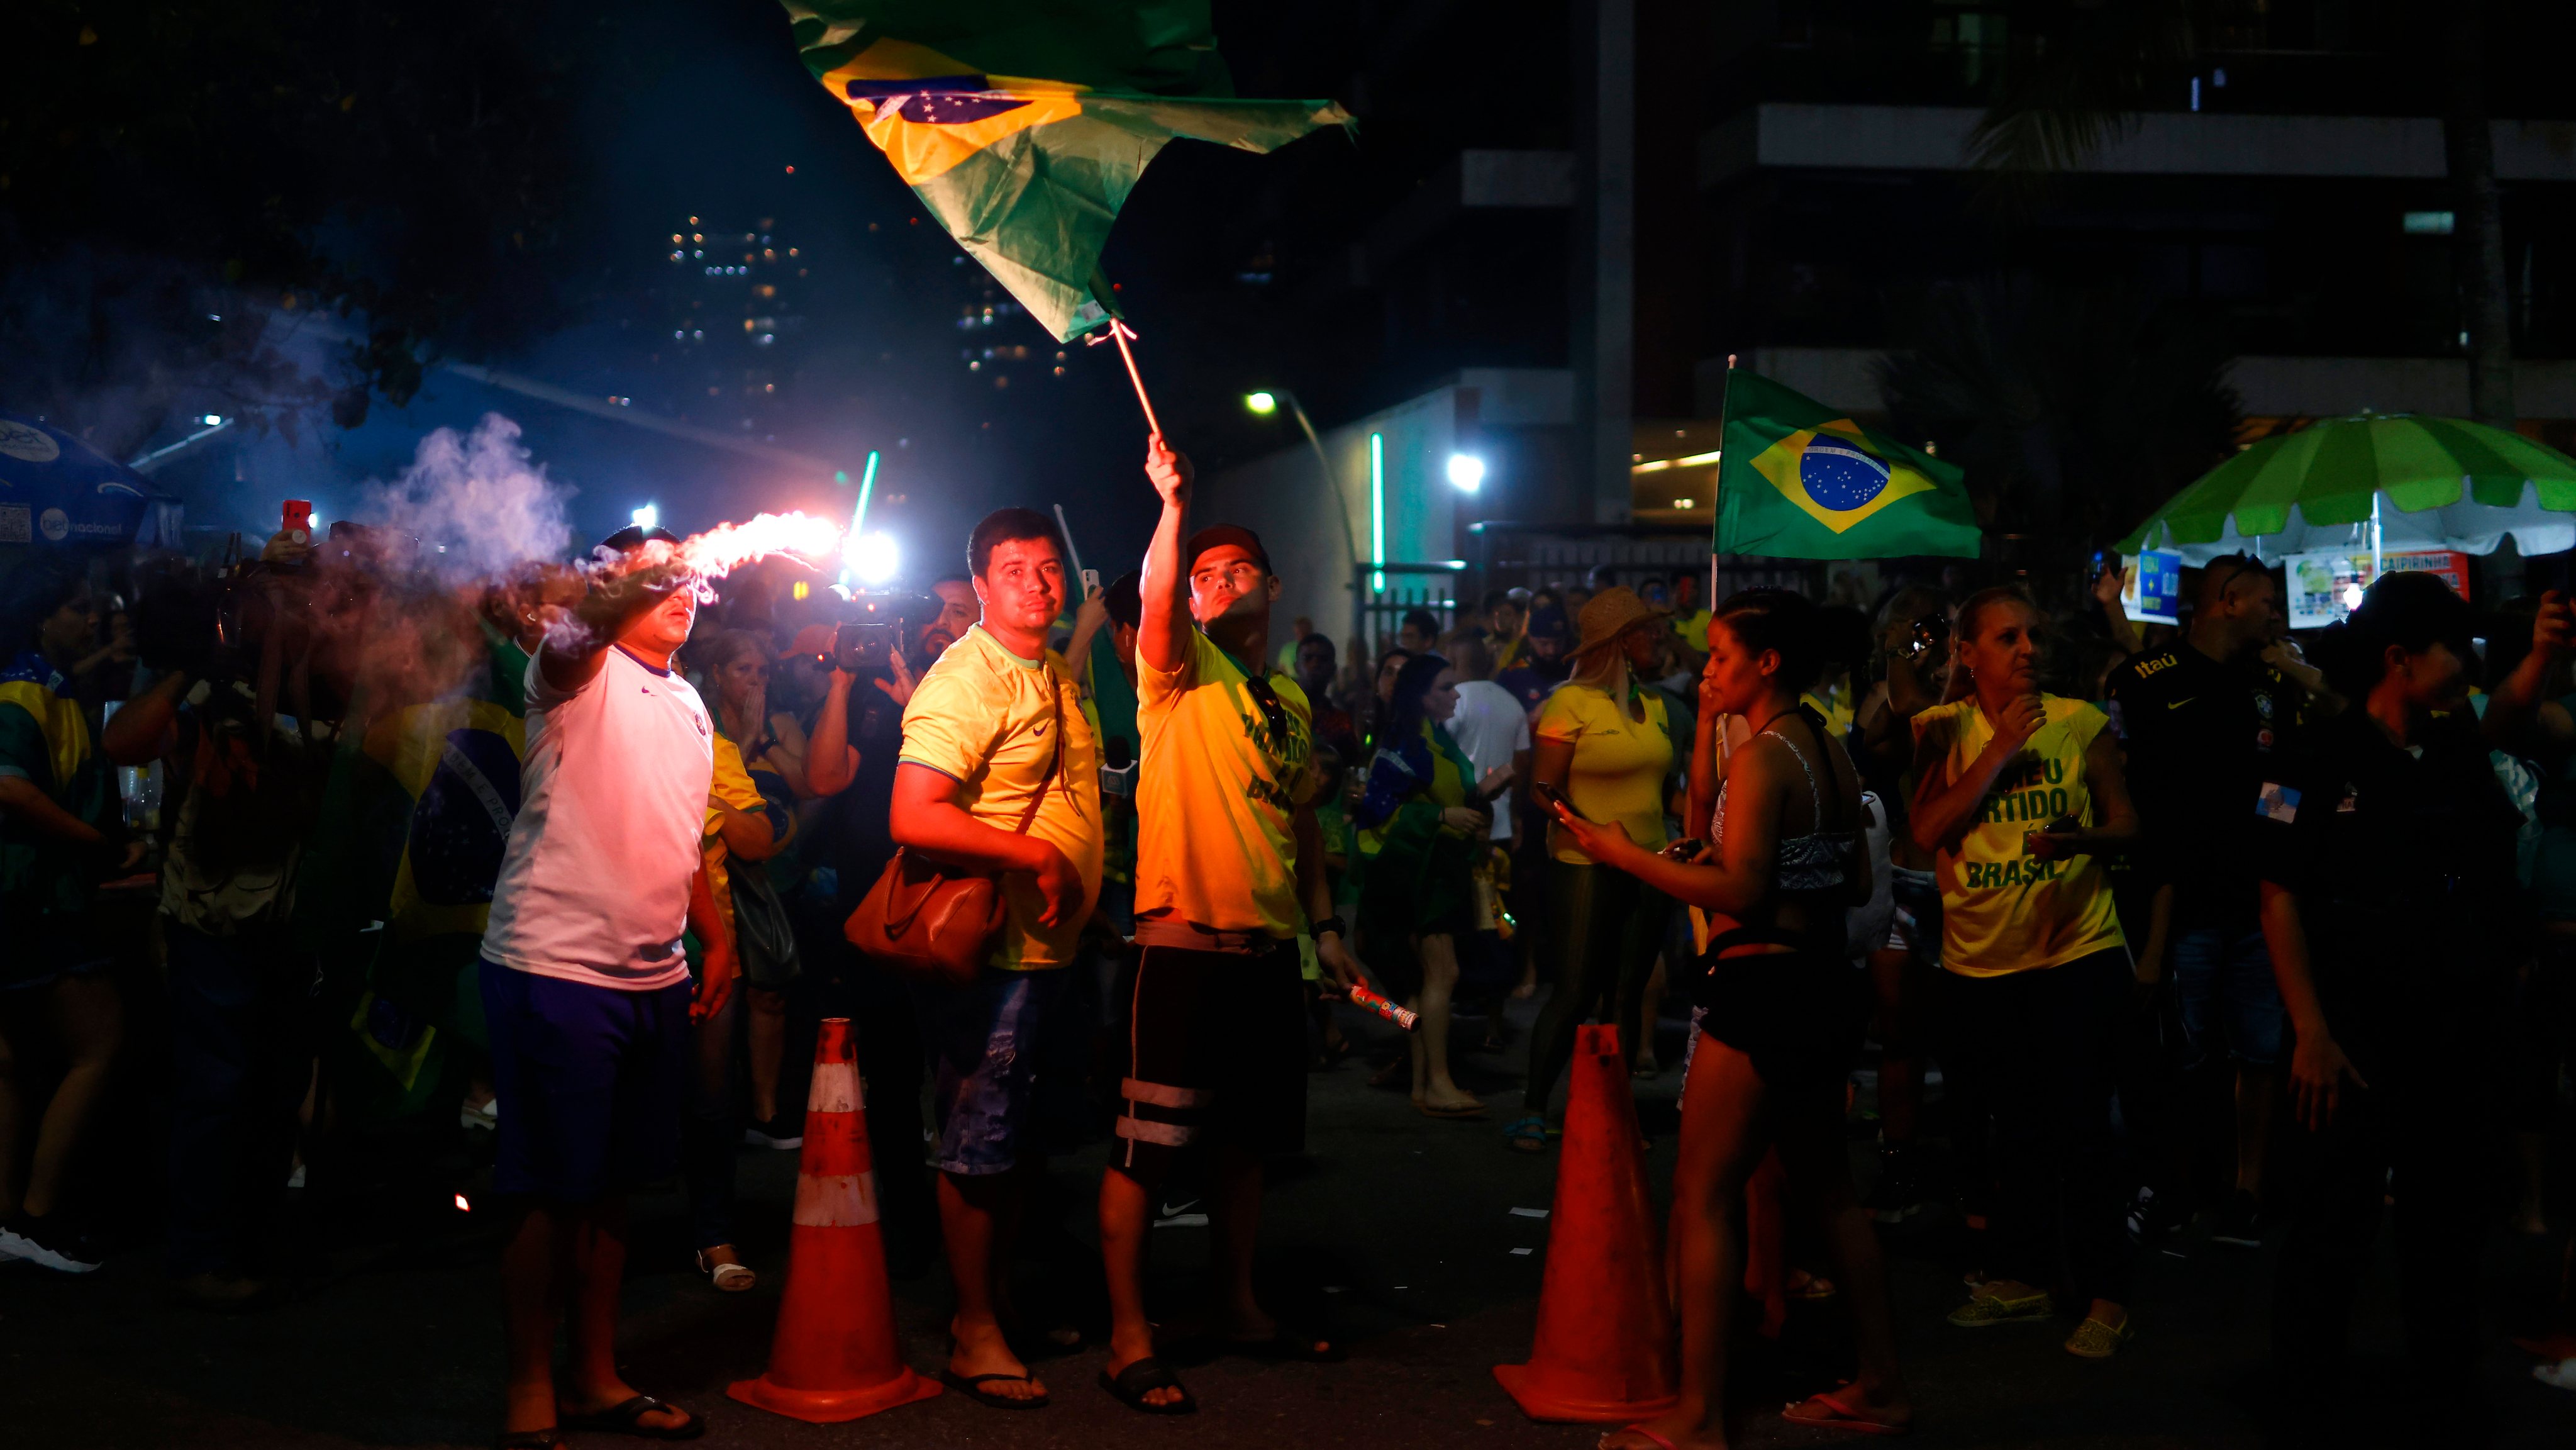 Brazilians Head to Polls in Tight Run-off Between Lula and Bolsonaro